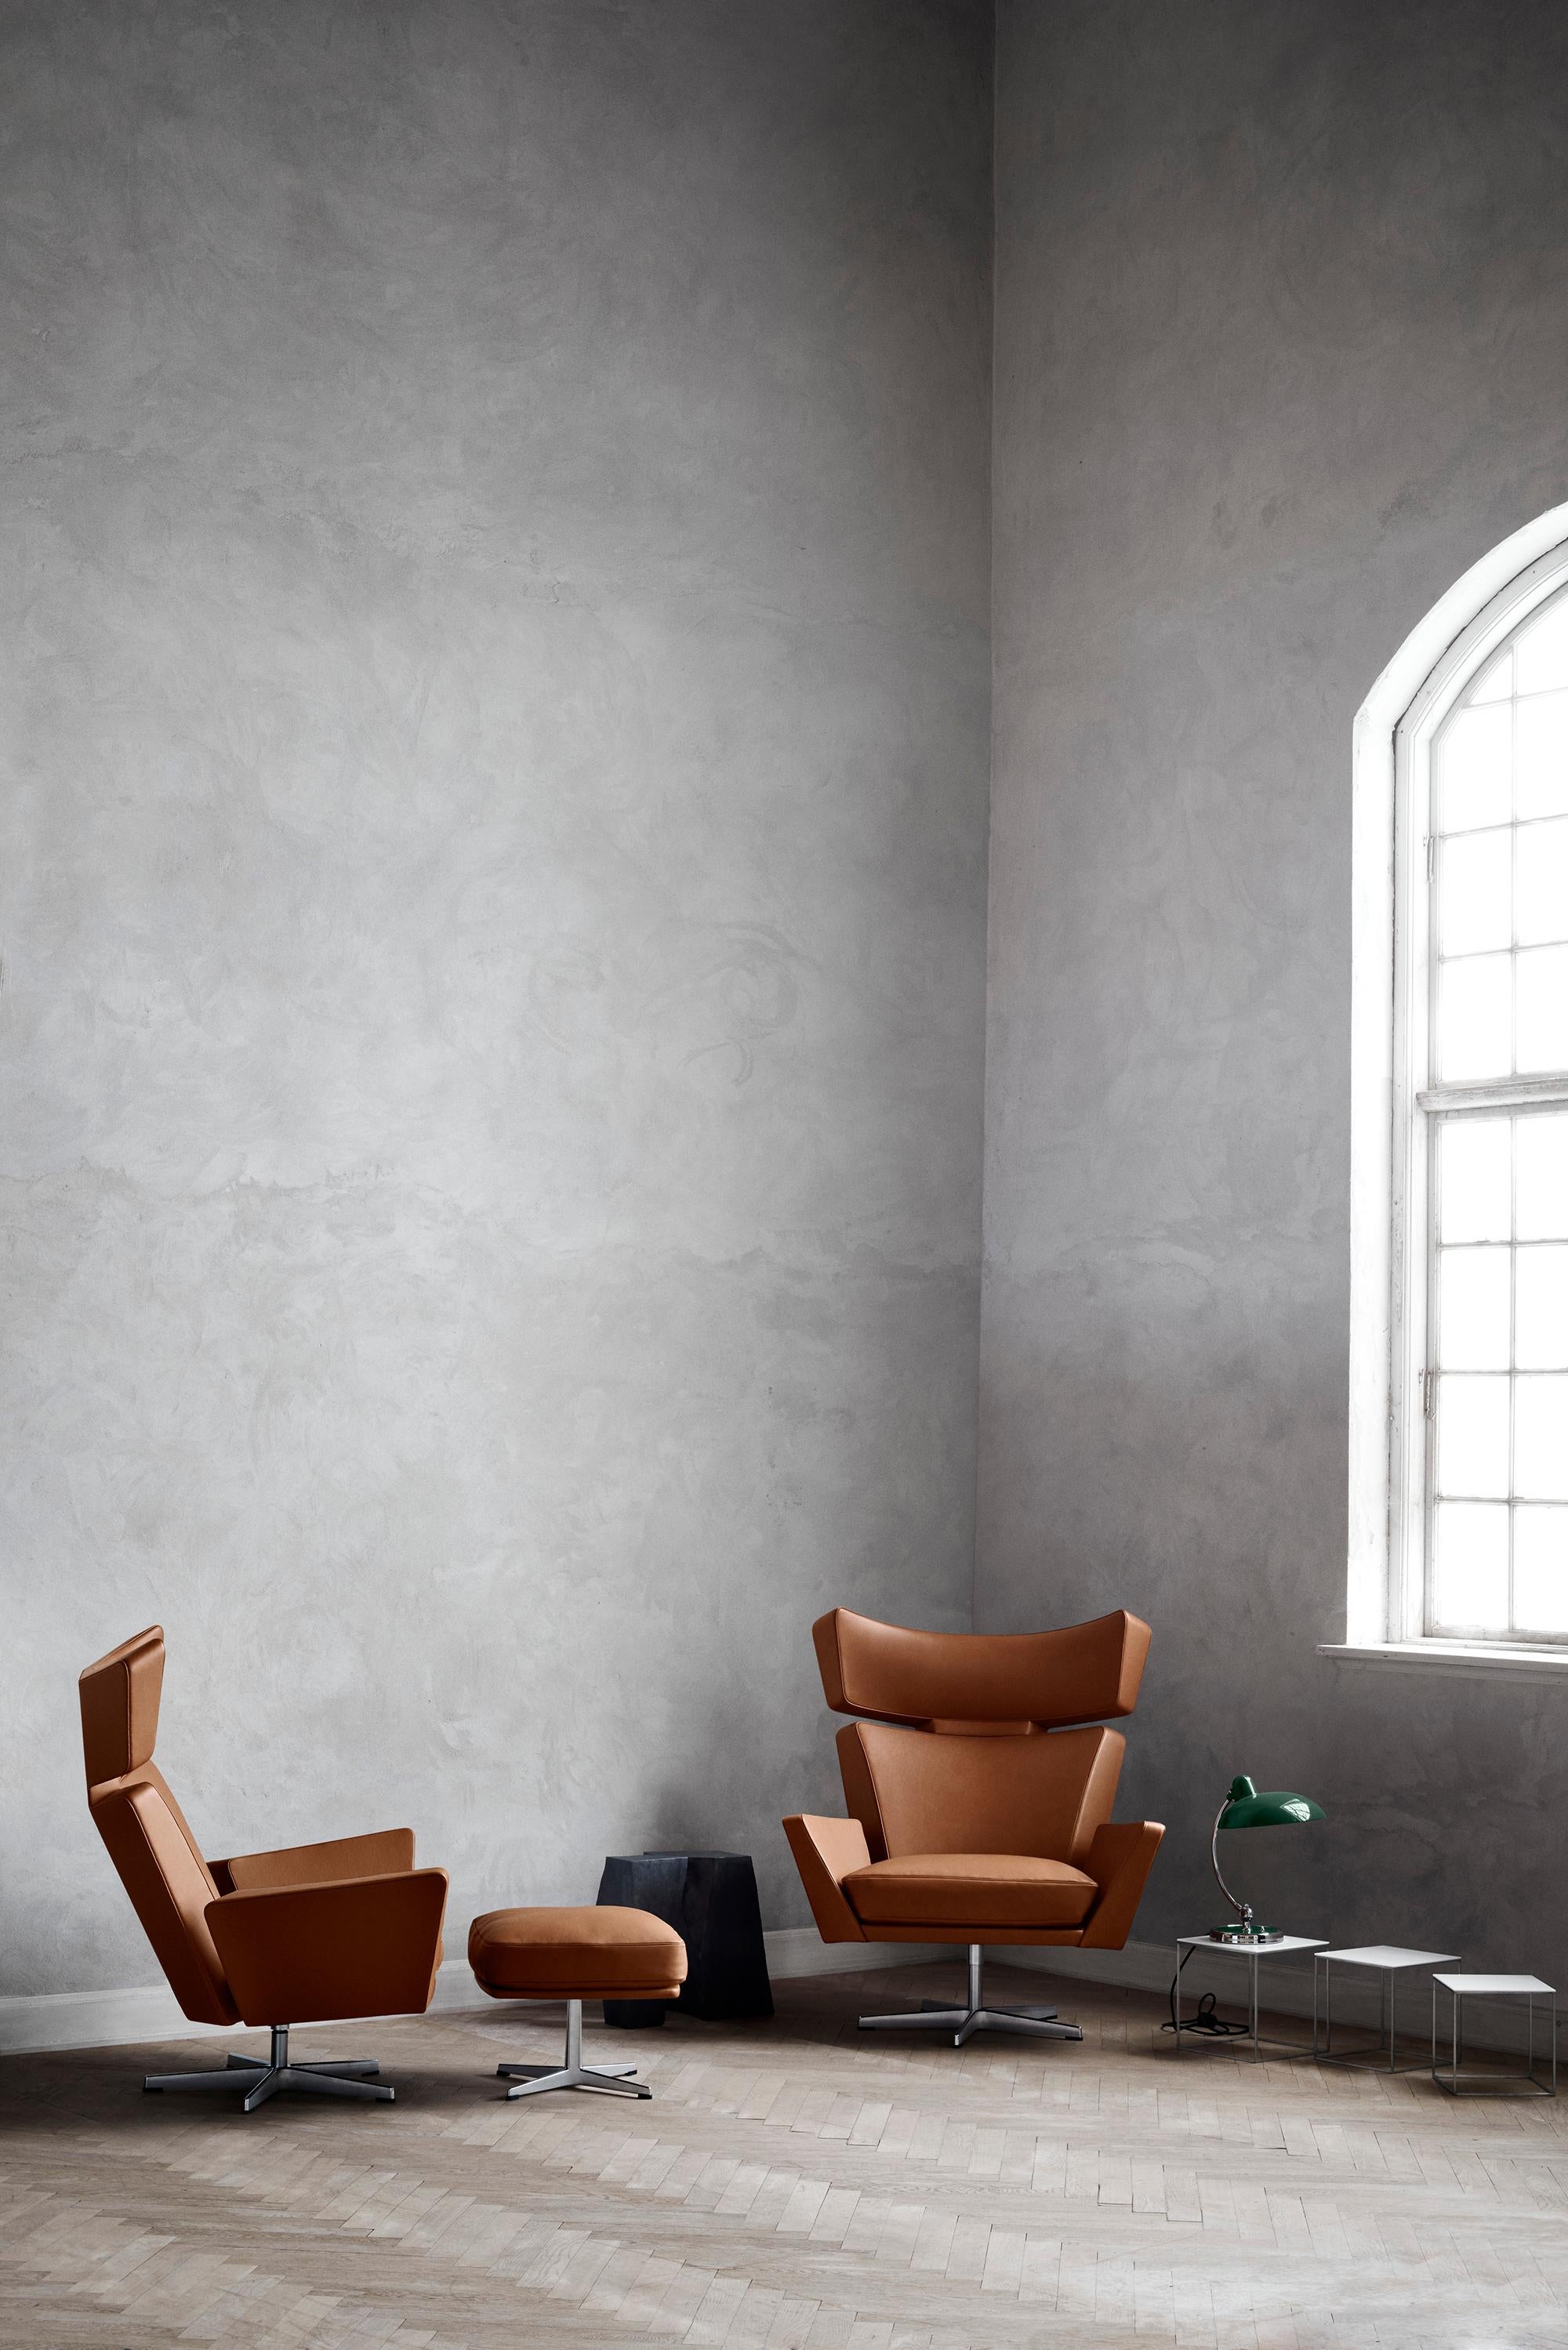 Arne Jacobsen 'Oksen' Stuhl für Fritz Hansen in Essential Leather Polsterung.

Fritz Hansen wurde 1872 gegründet und ist zum Synonym für legendäres dänisches Design geworden. Die Marke kombiniert zeitlose Handwerkskunst mit einem Schwerpunkt auf